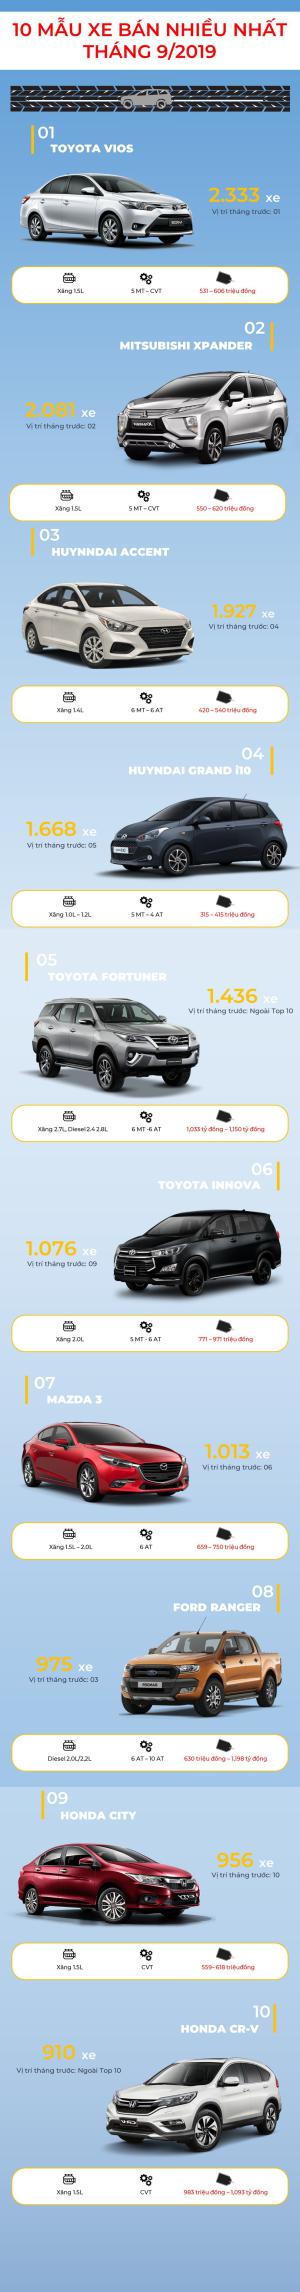 Top 10 mẫu xe bán chạy nhất Việt Nam trong tháng 9/2019